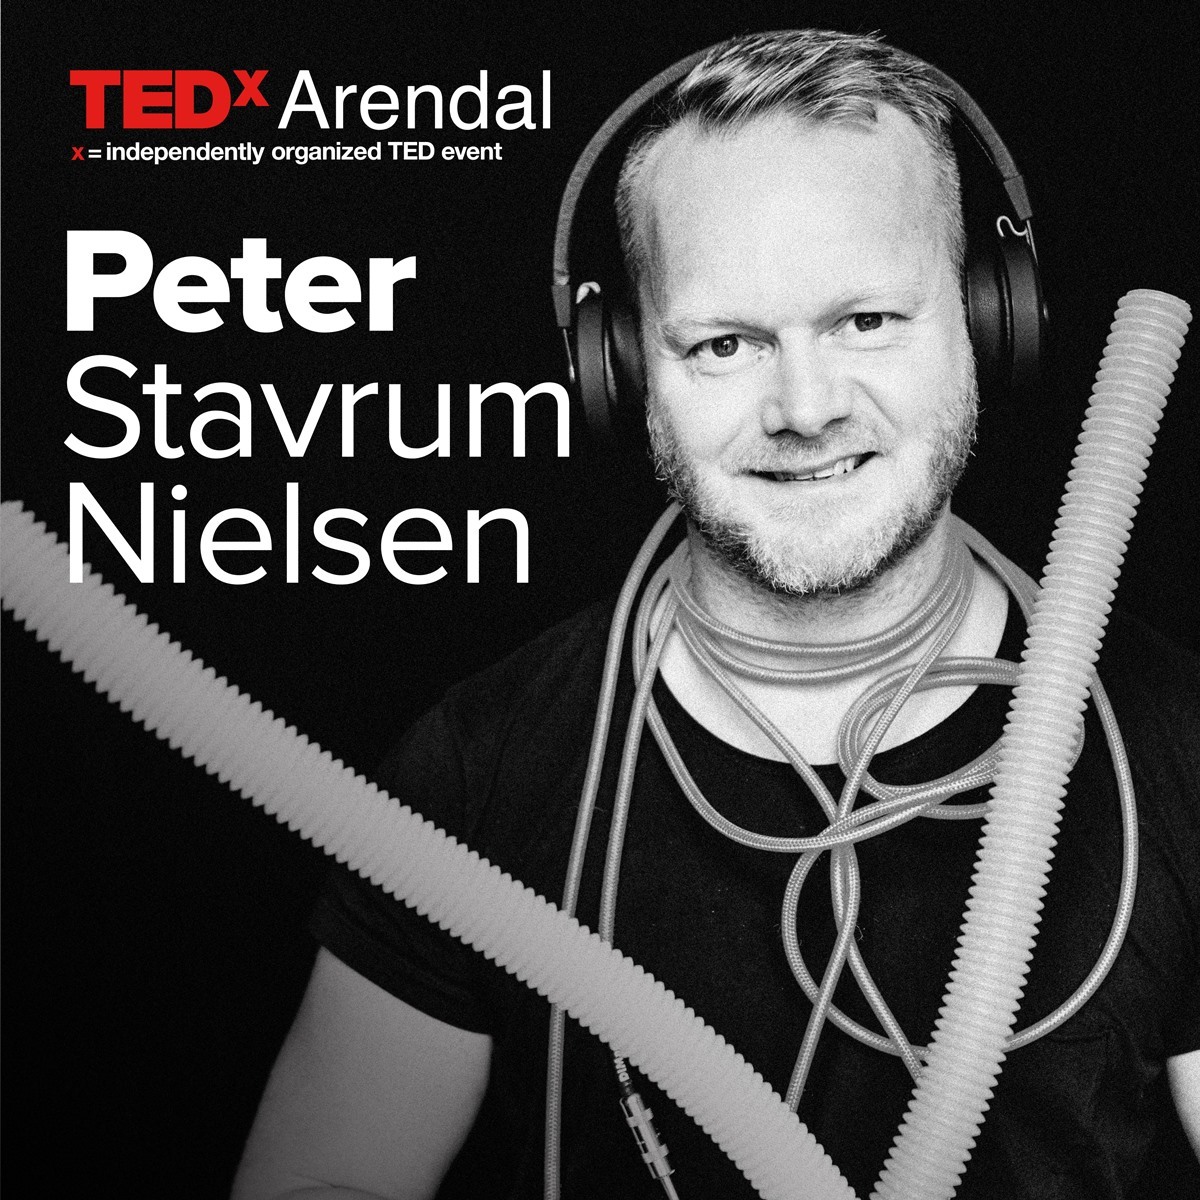 Peter Stavrum Nielsen